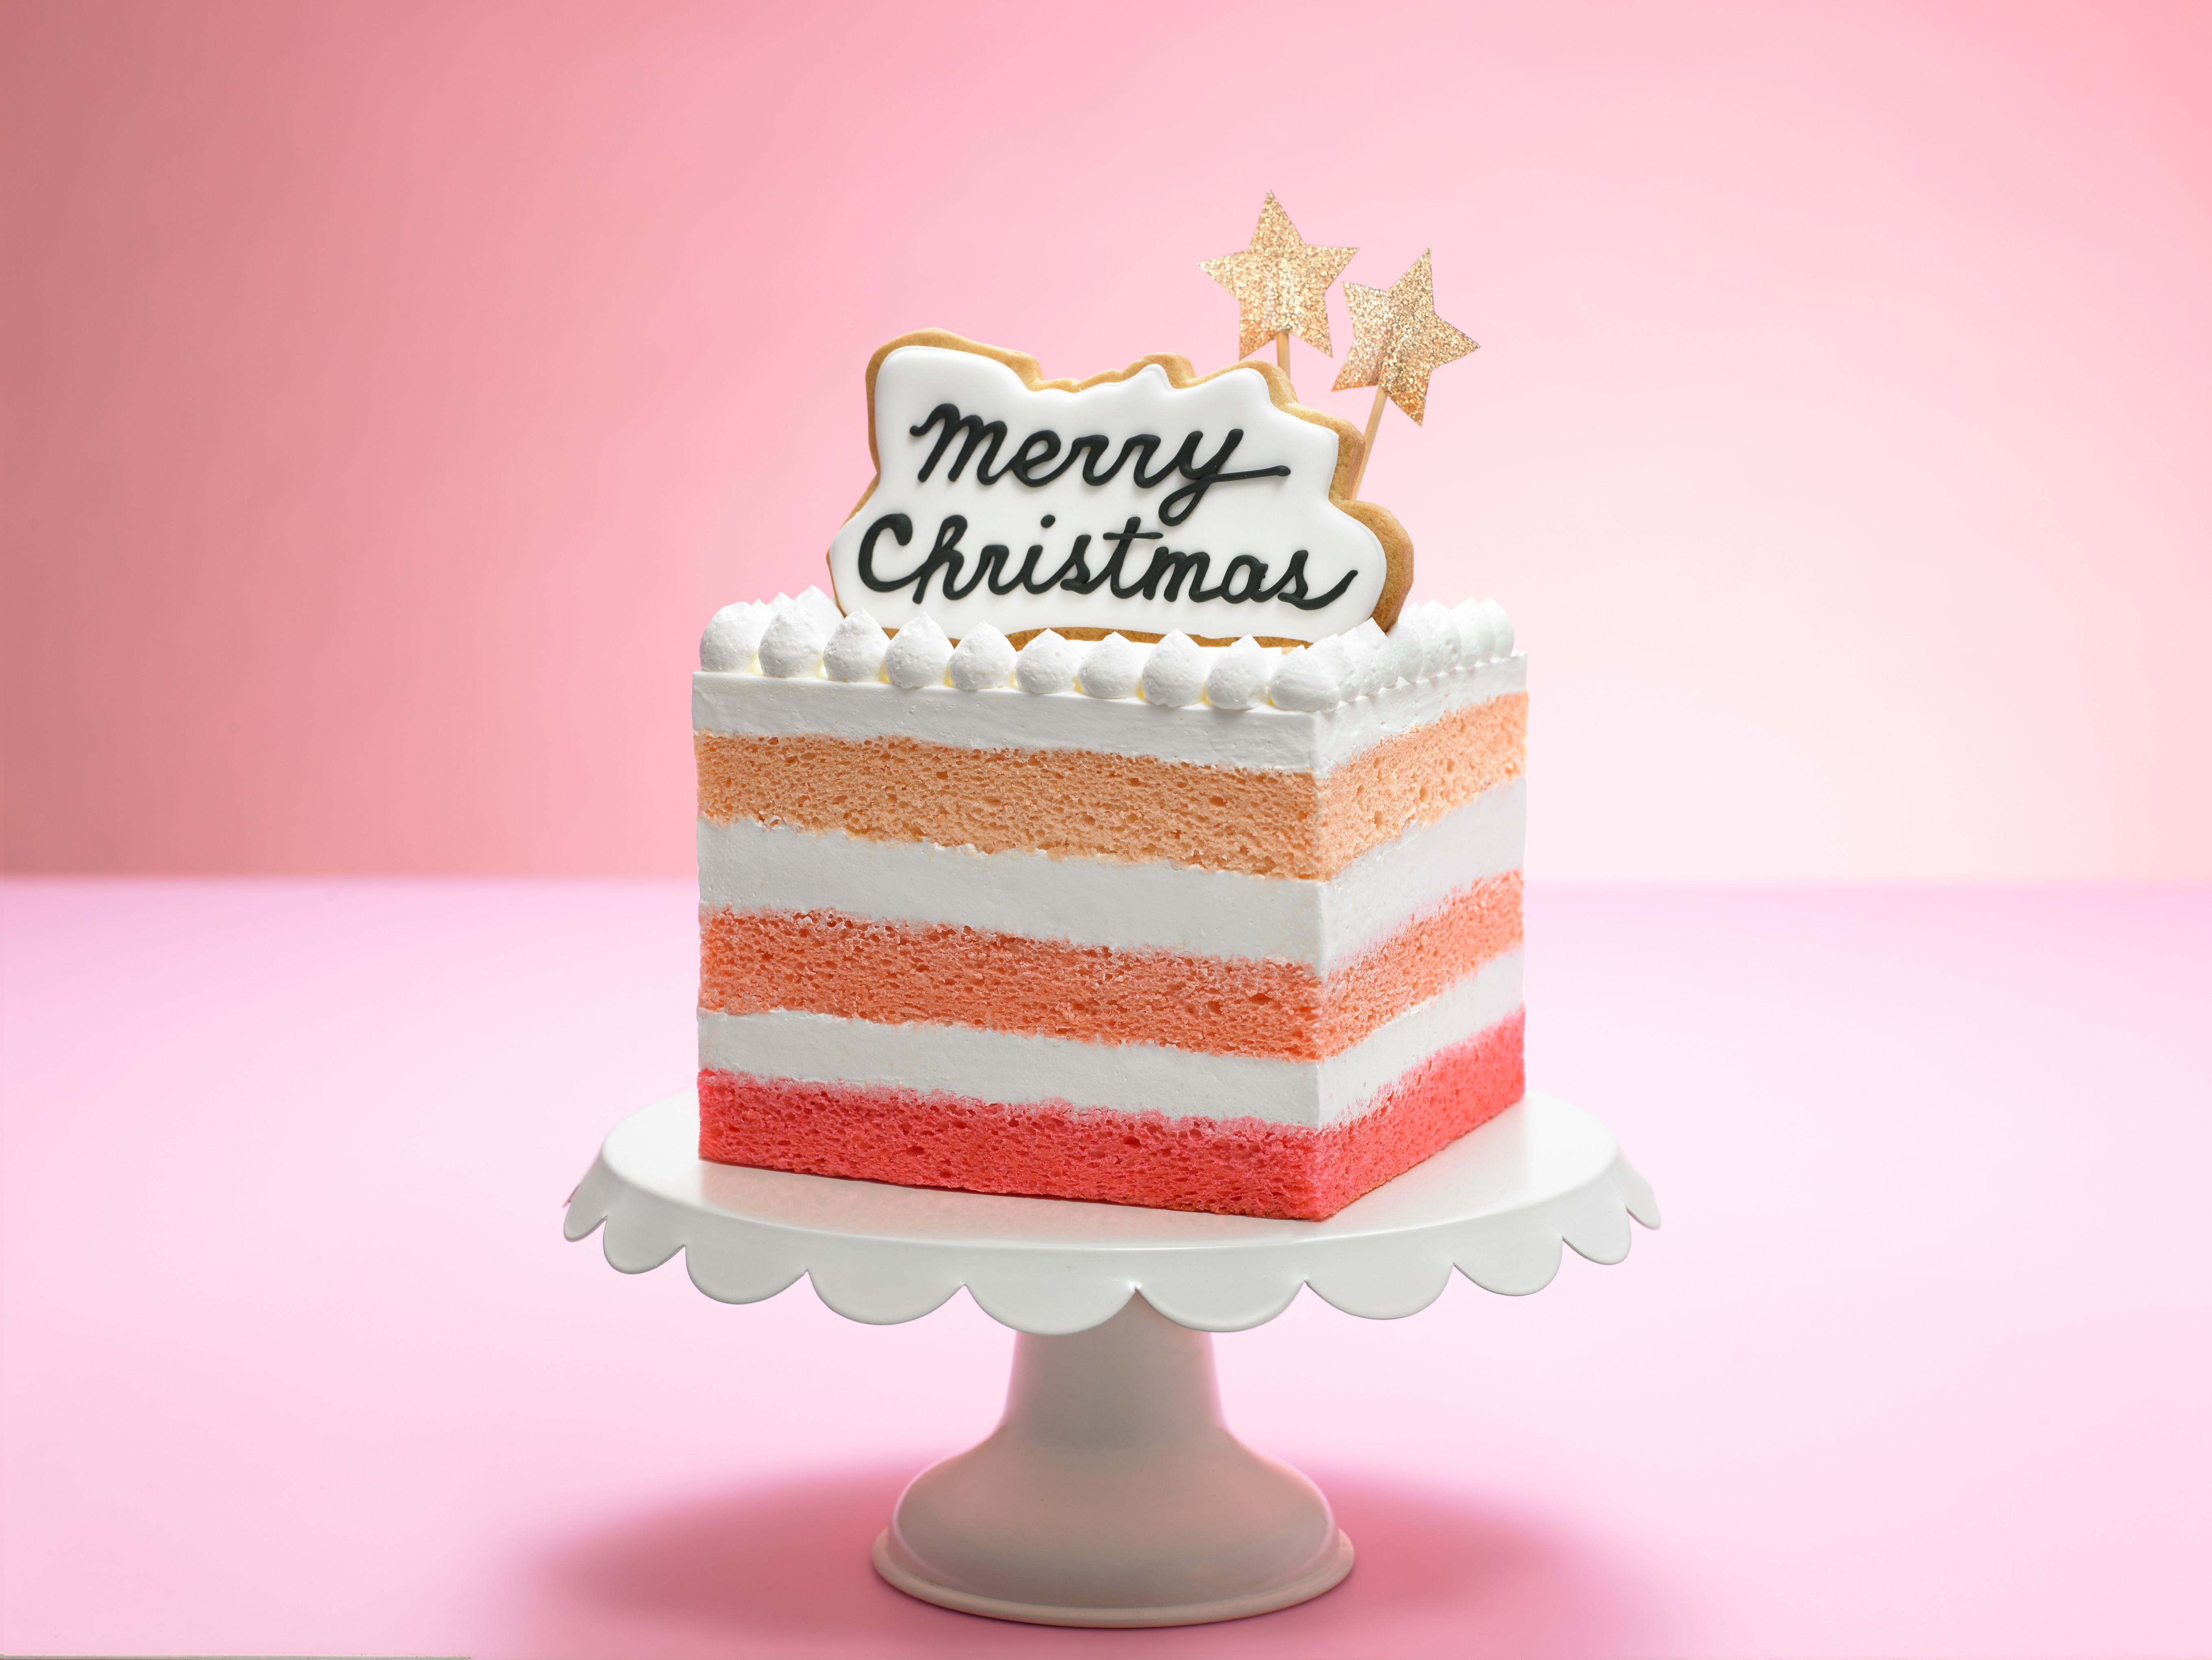 インスタ映え するフォトジェニックなケーキがズラリ 新宿小田急 クリスマスケーキの予約をスタートします 株式会社小田急百貨店のプレスリリース